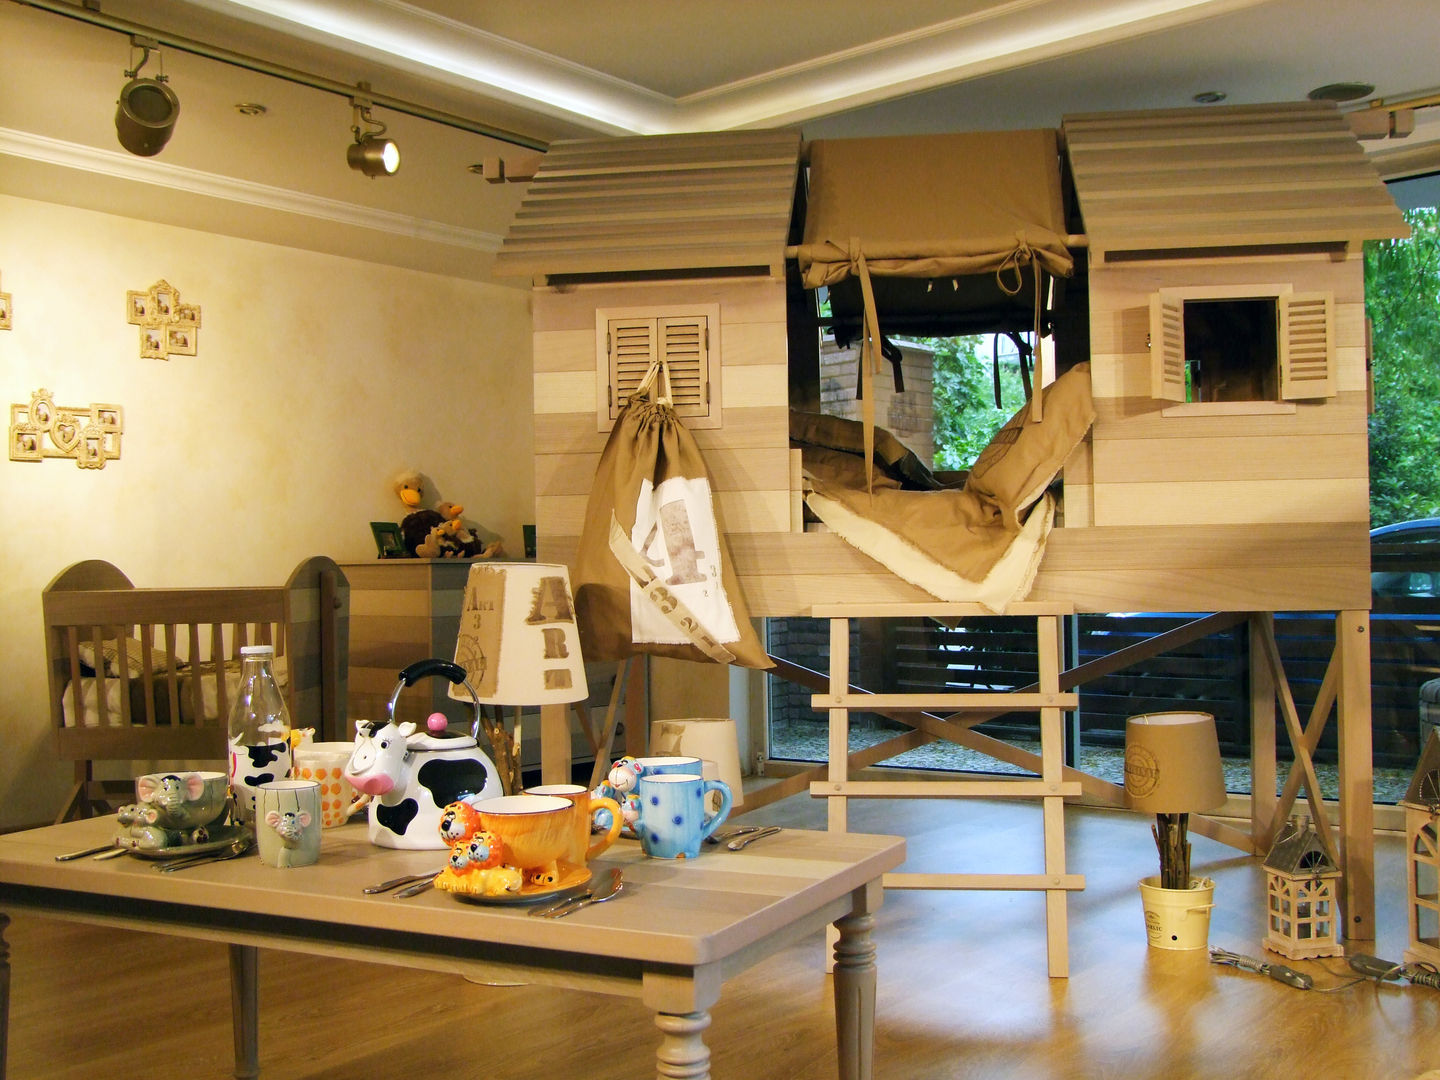 LACOTE Çiftlik temalı bebek ve çocuk odası , Lacote Design Lacote Design غرفة الاطفال Beds & cribs